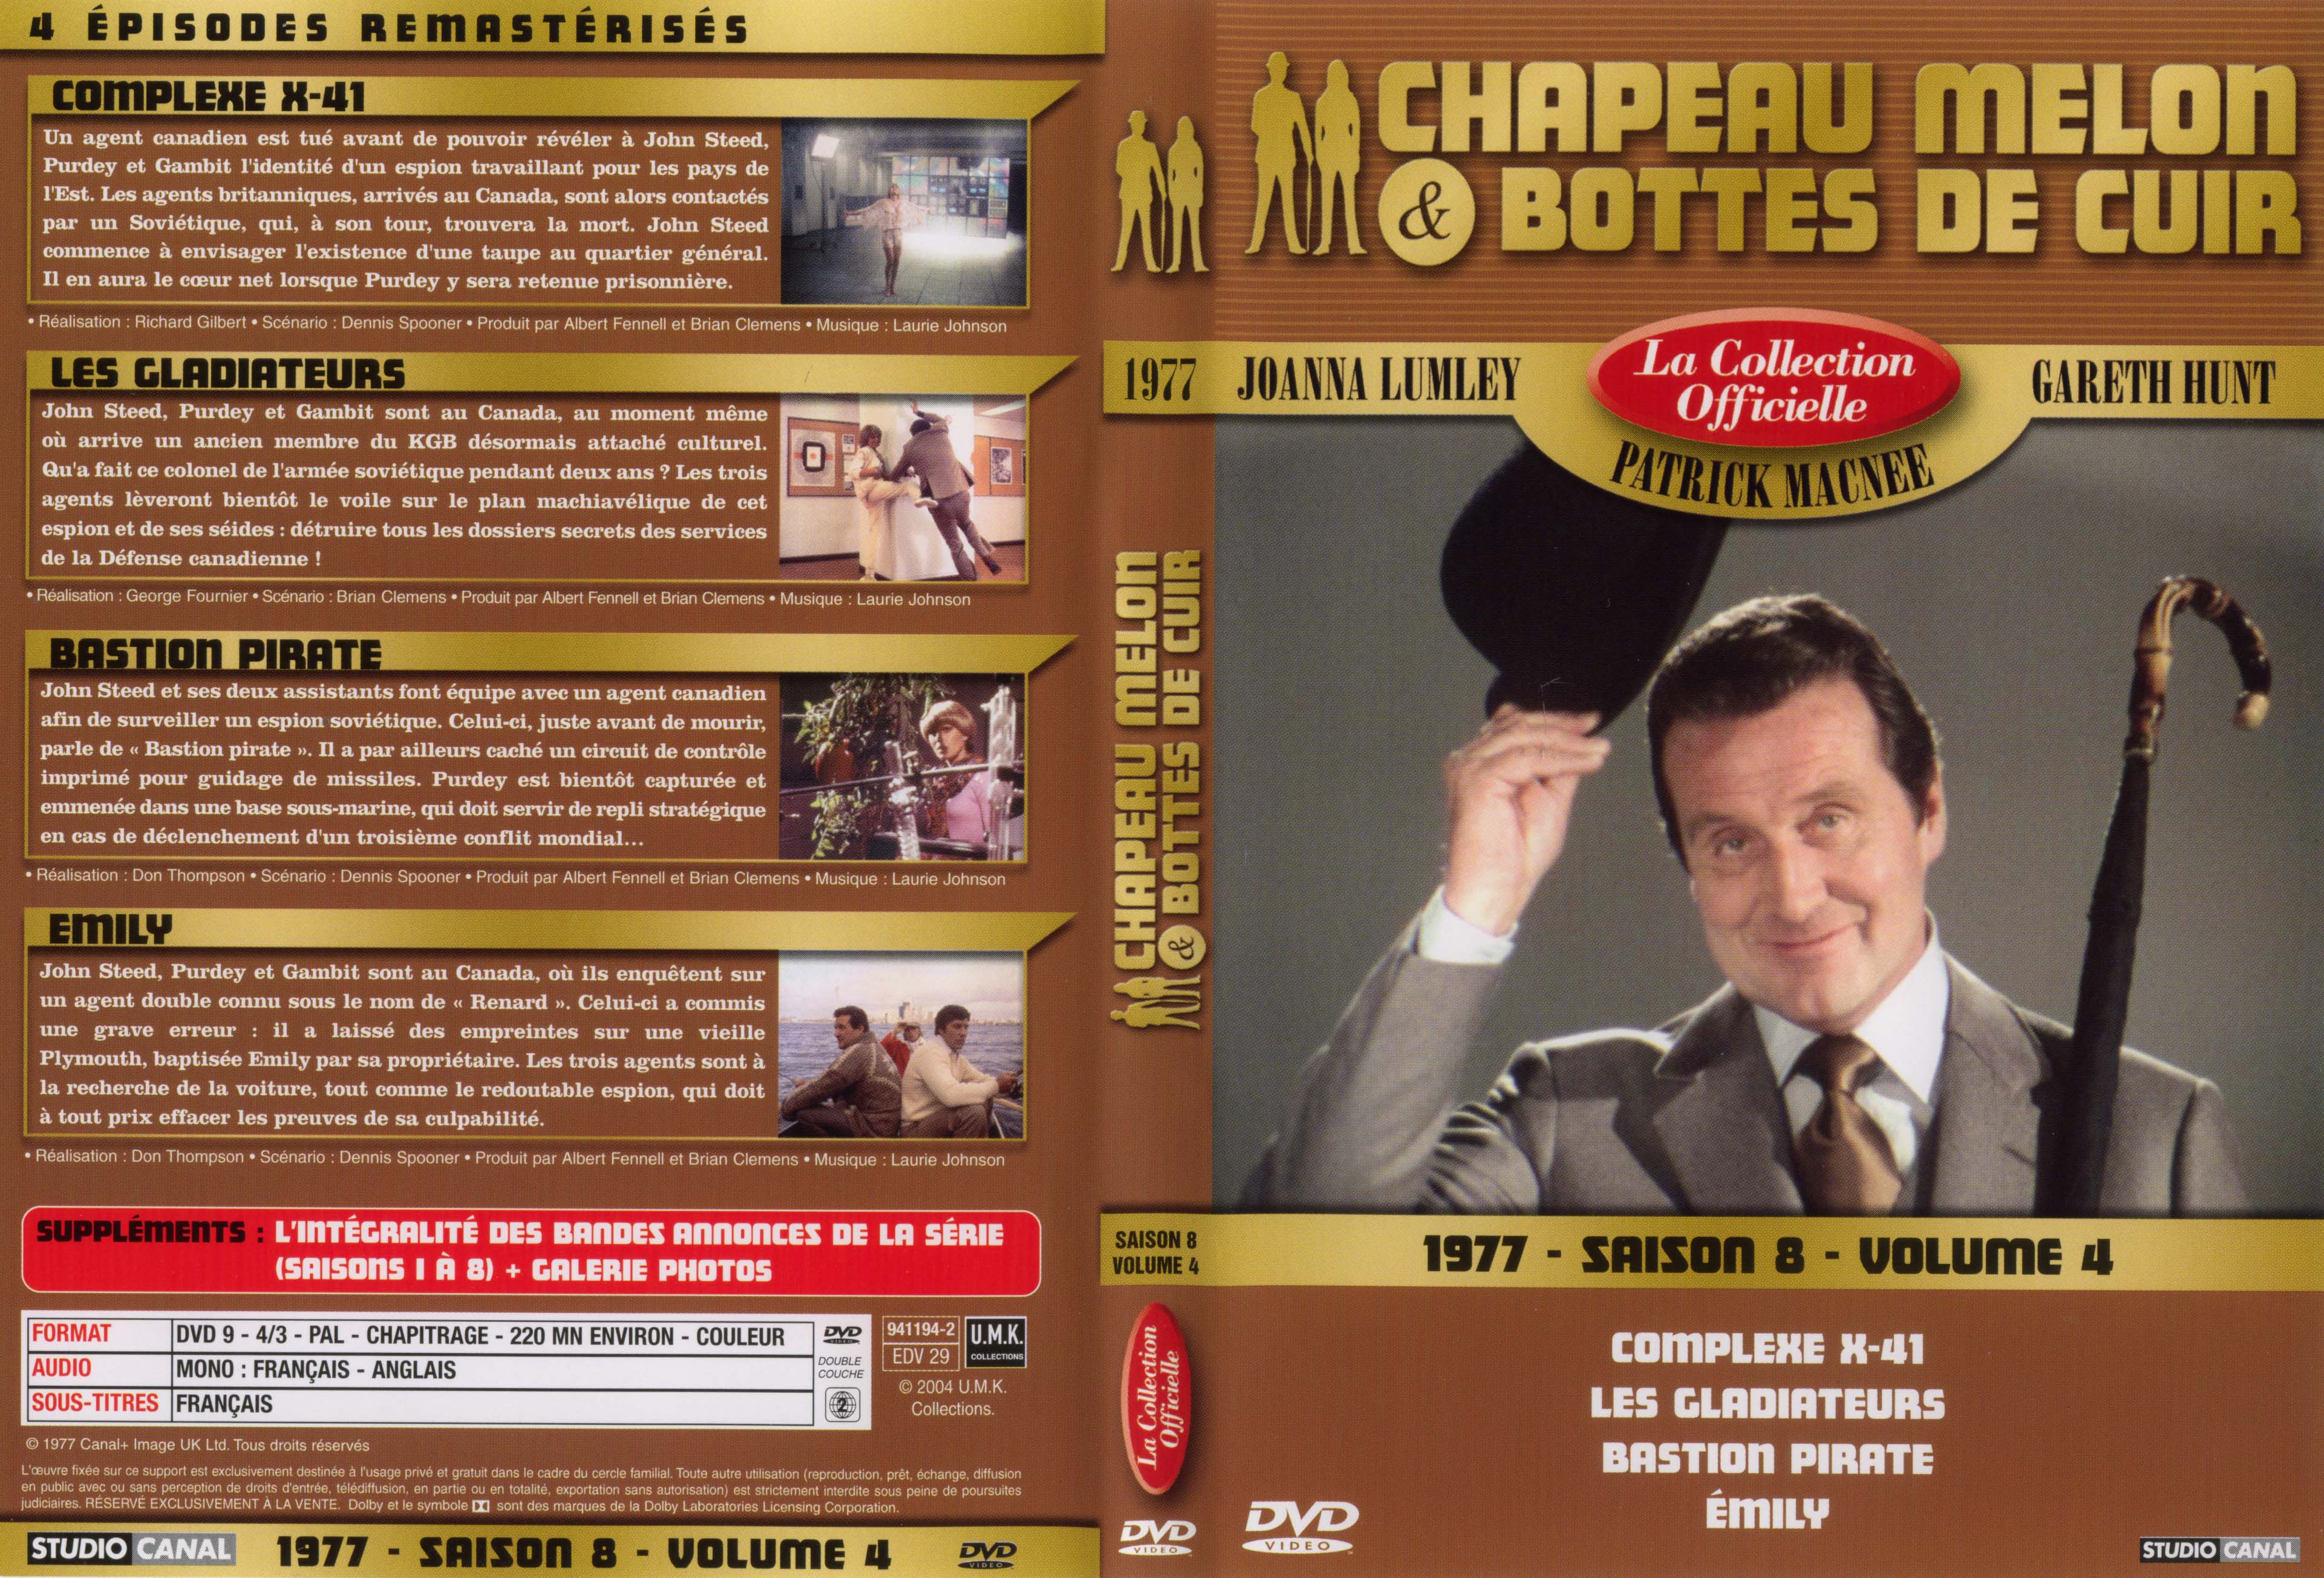 Jaquette DVD Chapeau melon et bottes de cuir 1977 saison 8 vol 4